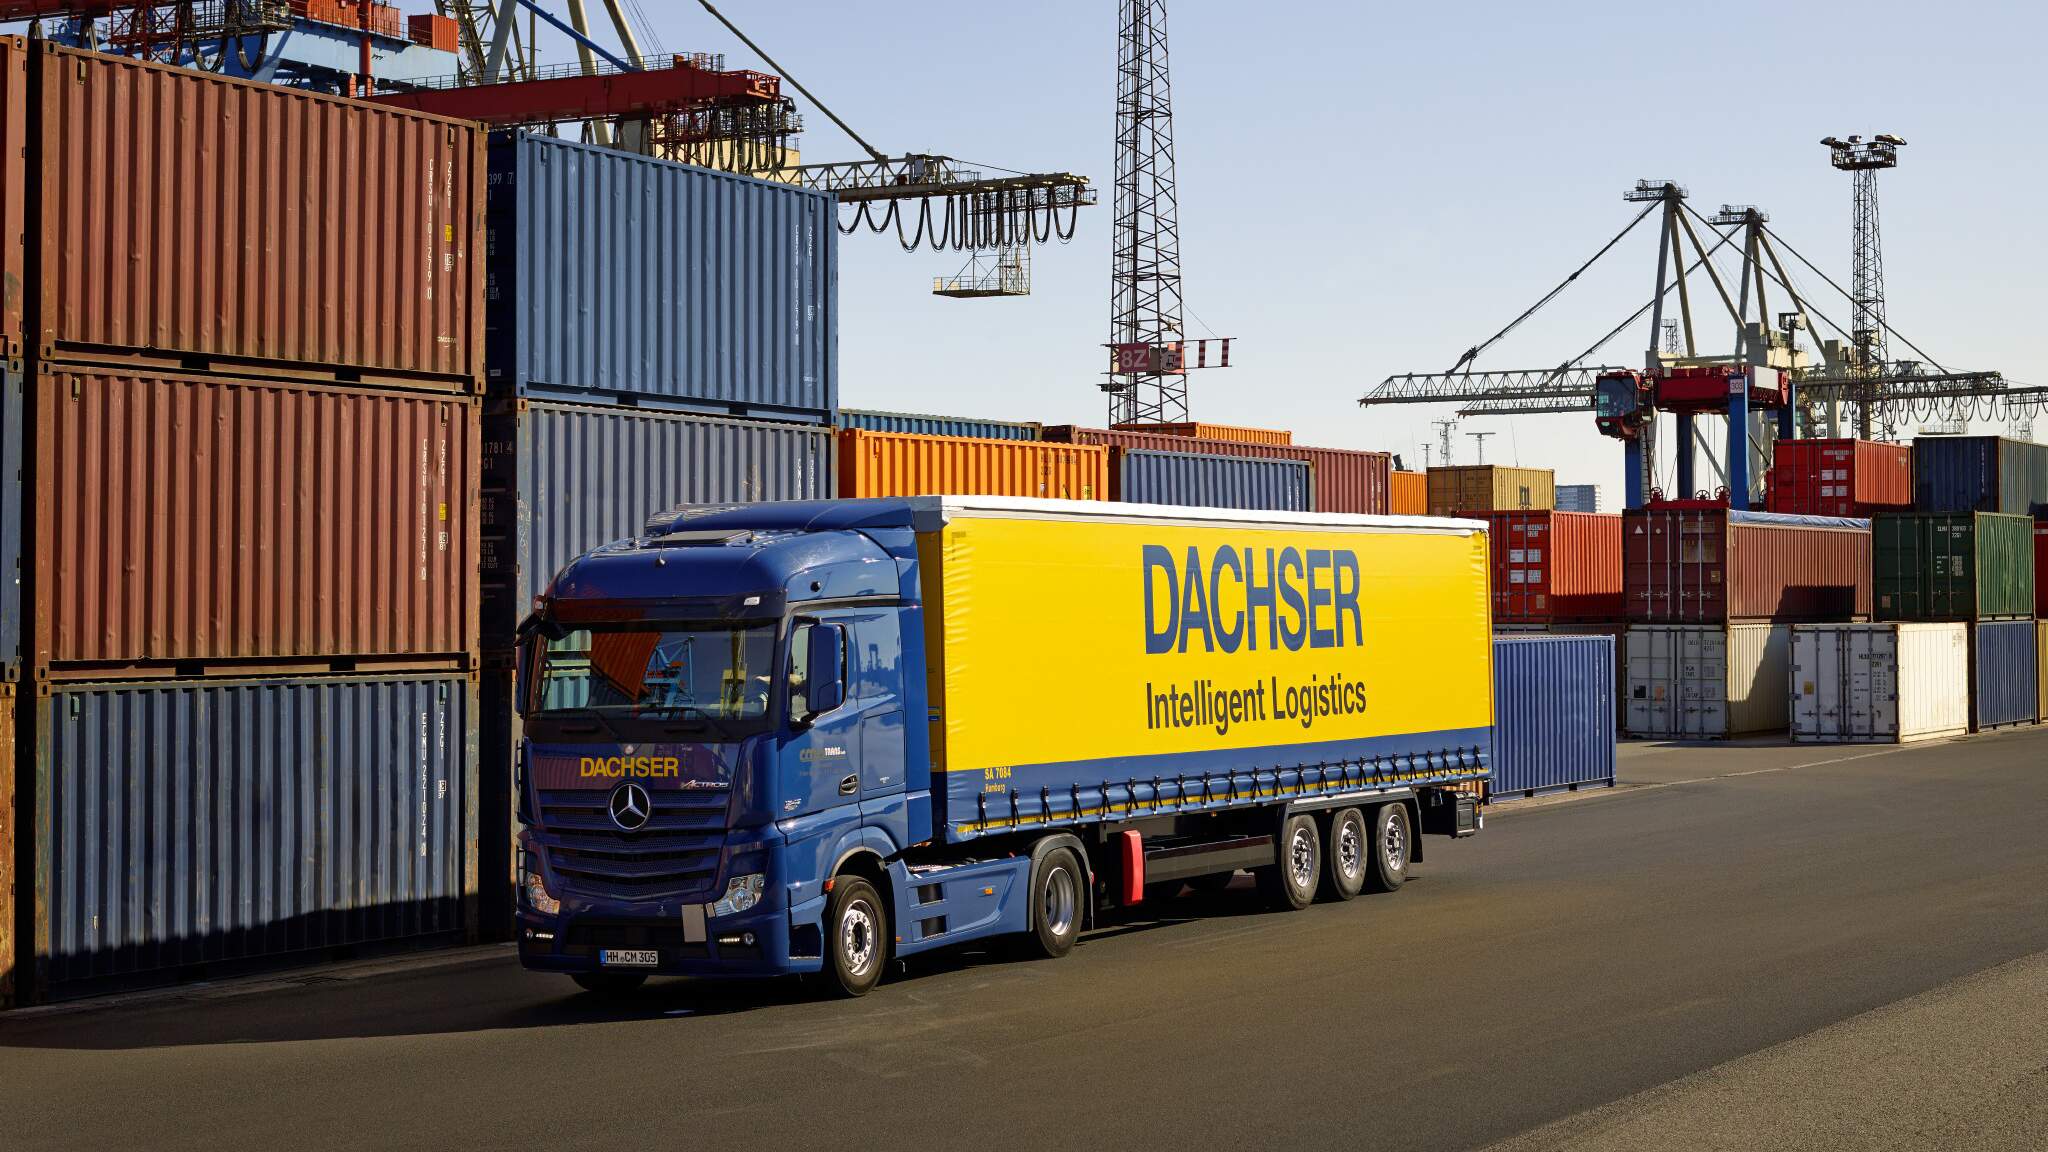 Díky zkušenostem, zaměstnancům a digitálním technologiím se speciální průmyslové řešení, jako je DACHSER DIY Logistics, stane jednotným kontaktním místem – one-stop shop – pro všechny přepravní a logistické požadavky.